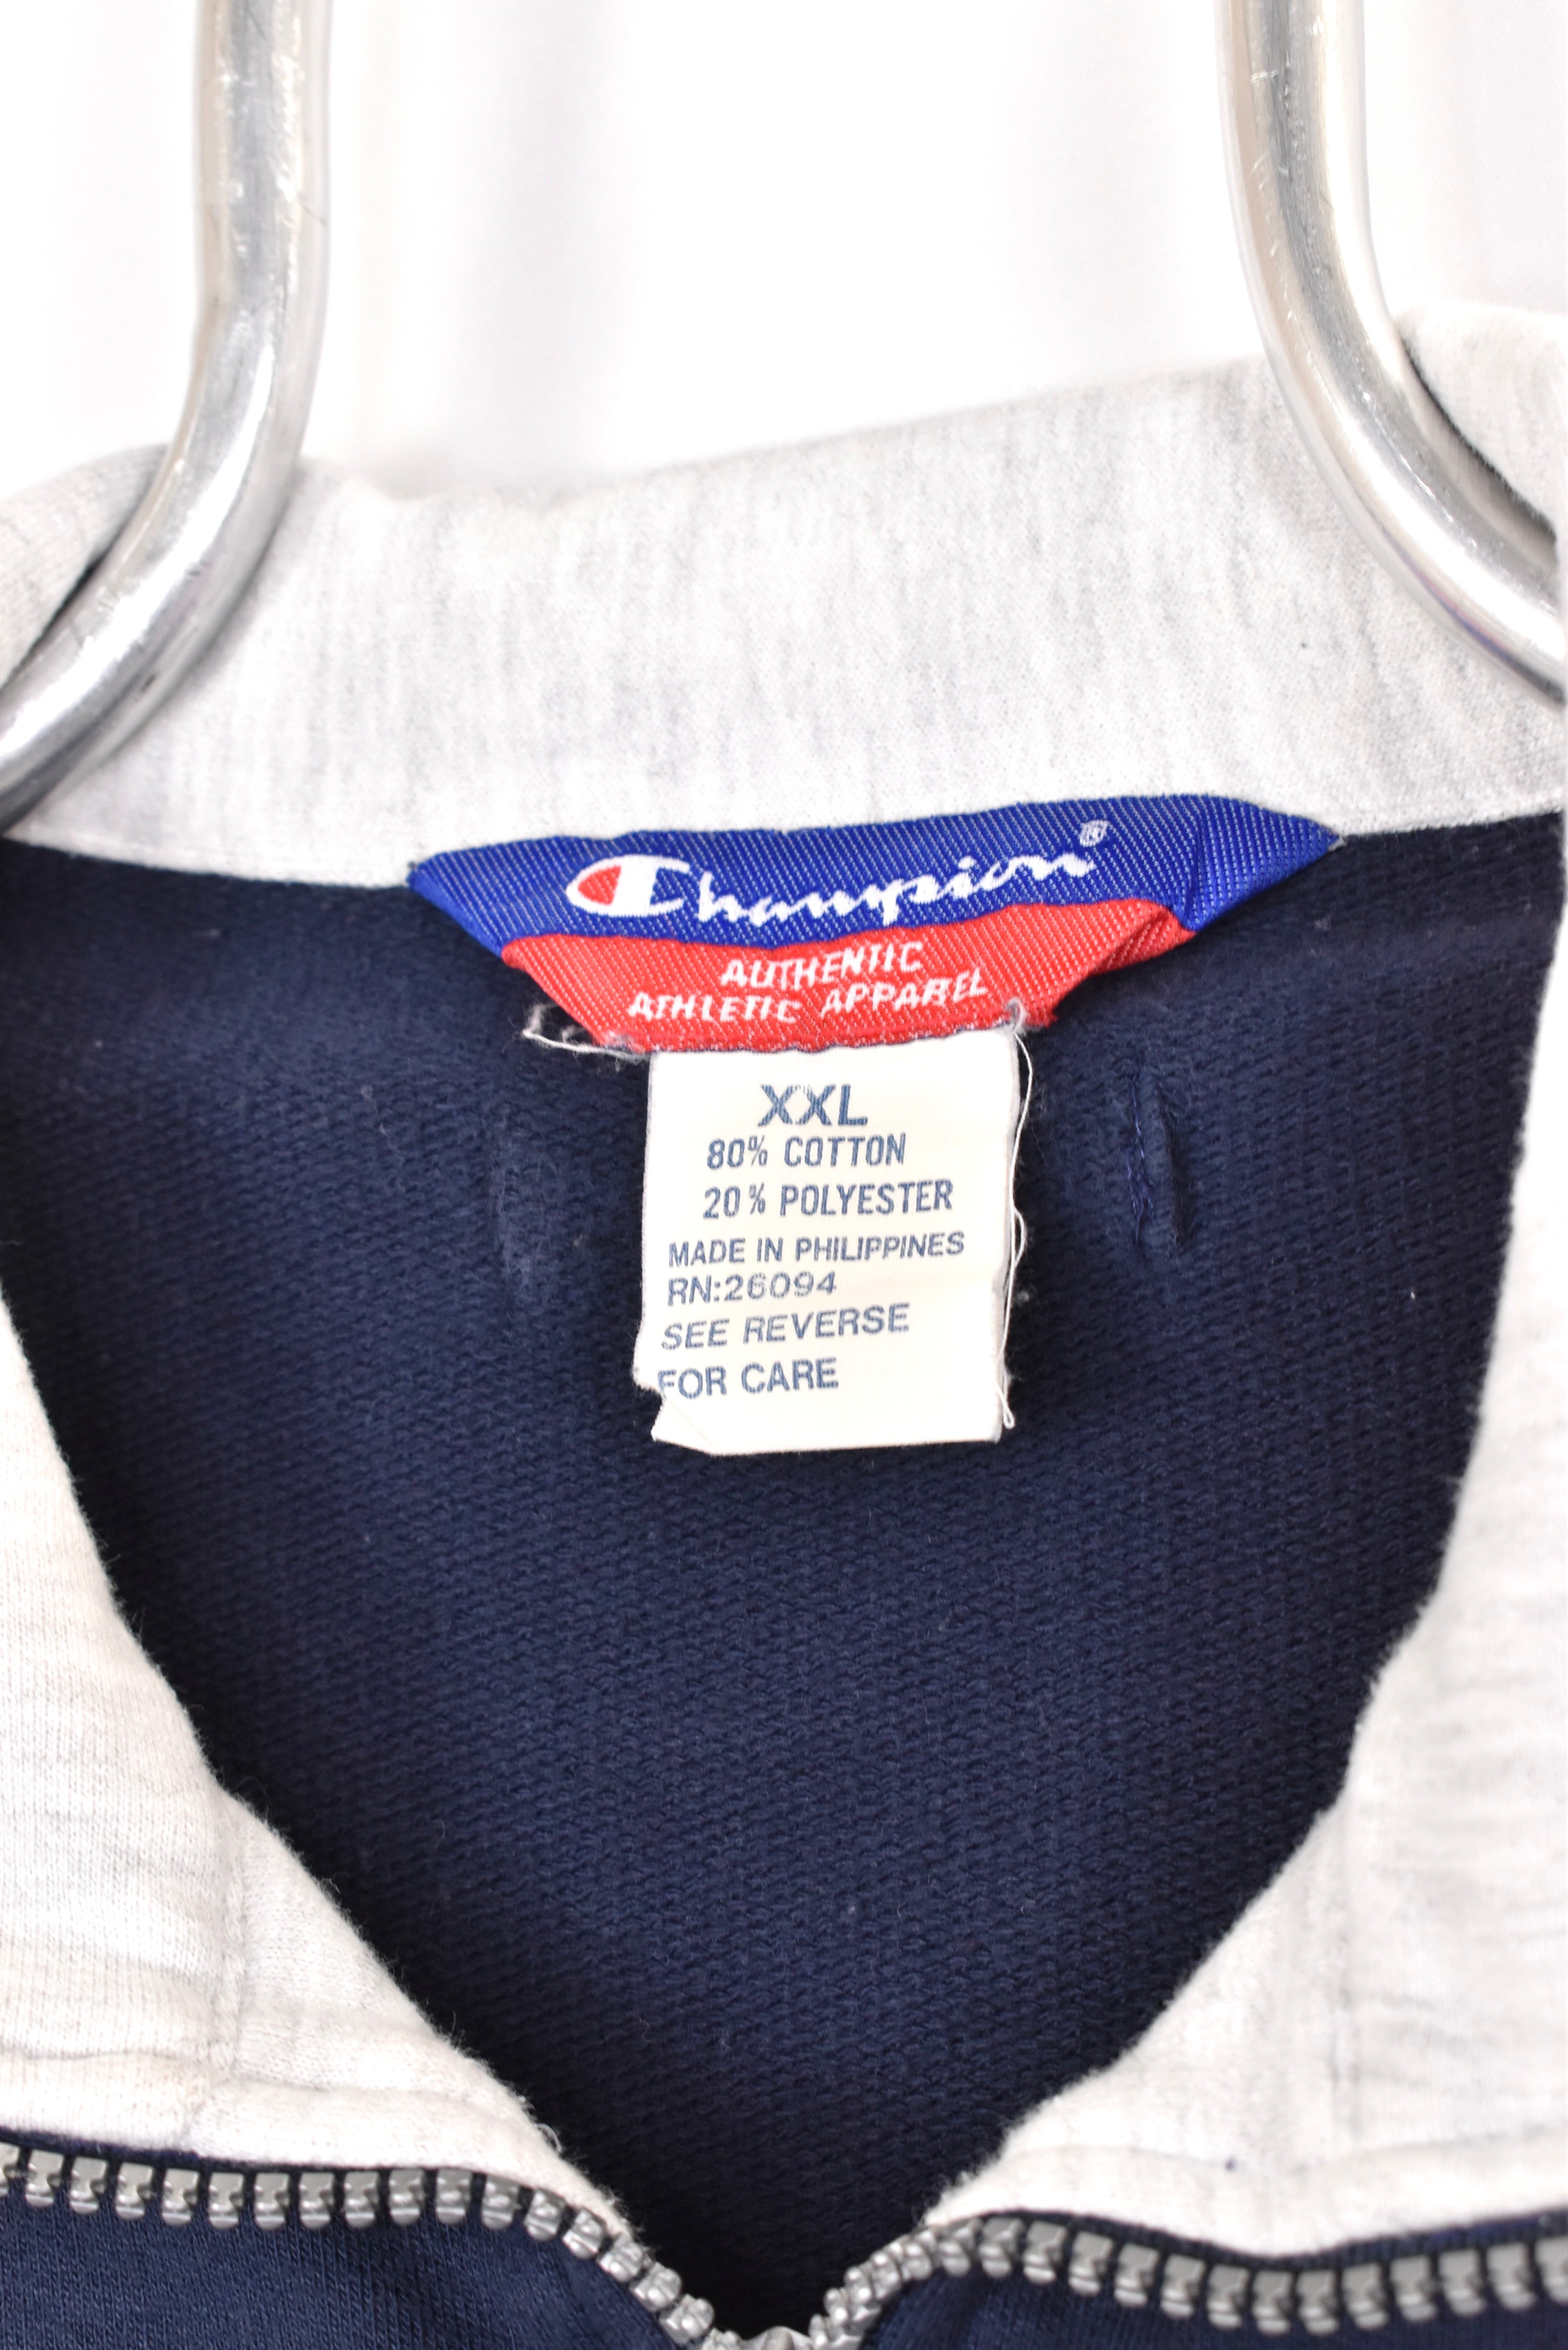 Vintage Champion sweatshirt, navy blue embroidered 1/4 zip jumper - AU XL CHAMPION